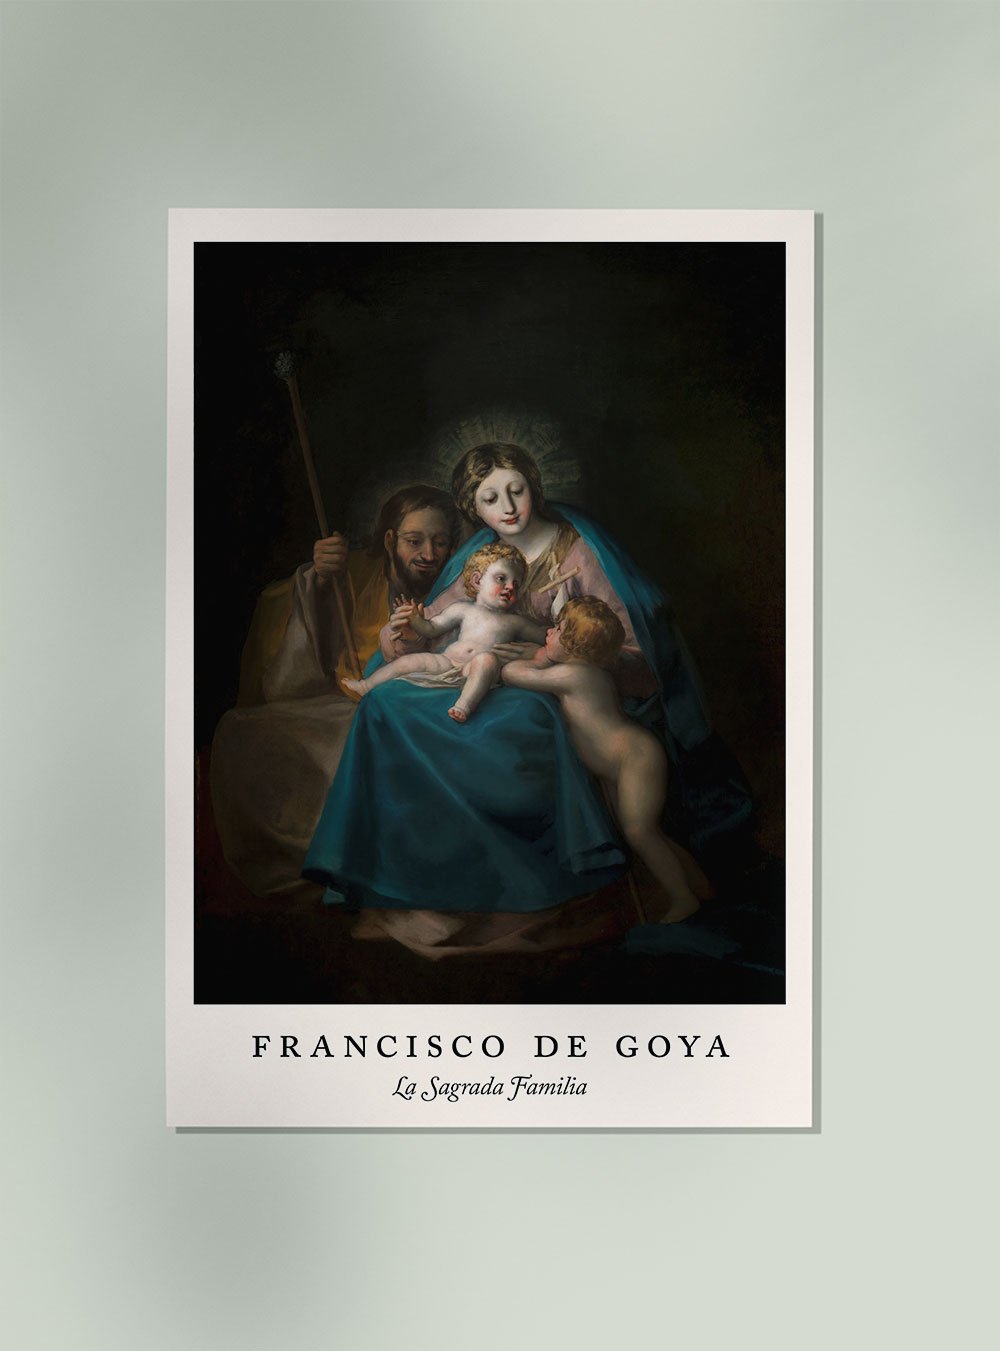 La Sagrada Familia by Francisco de Goya